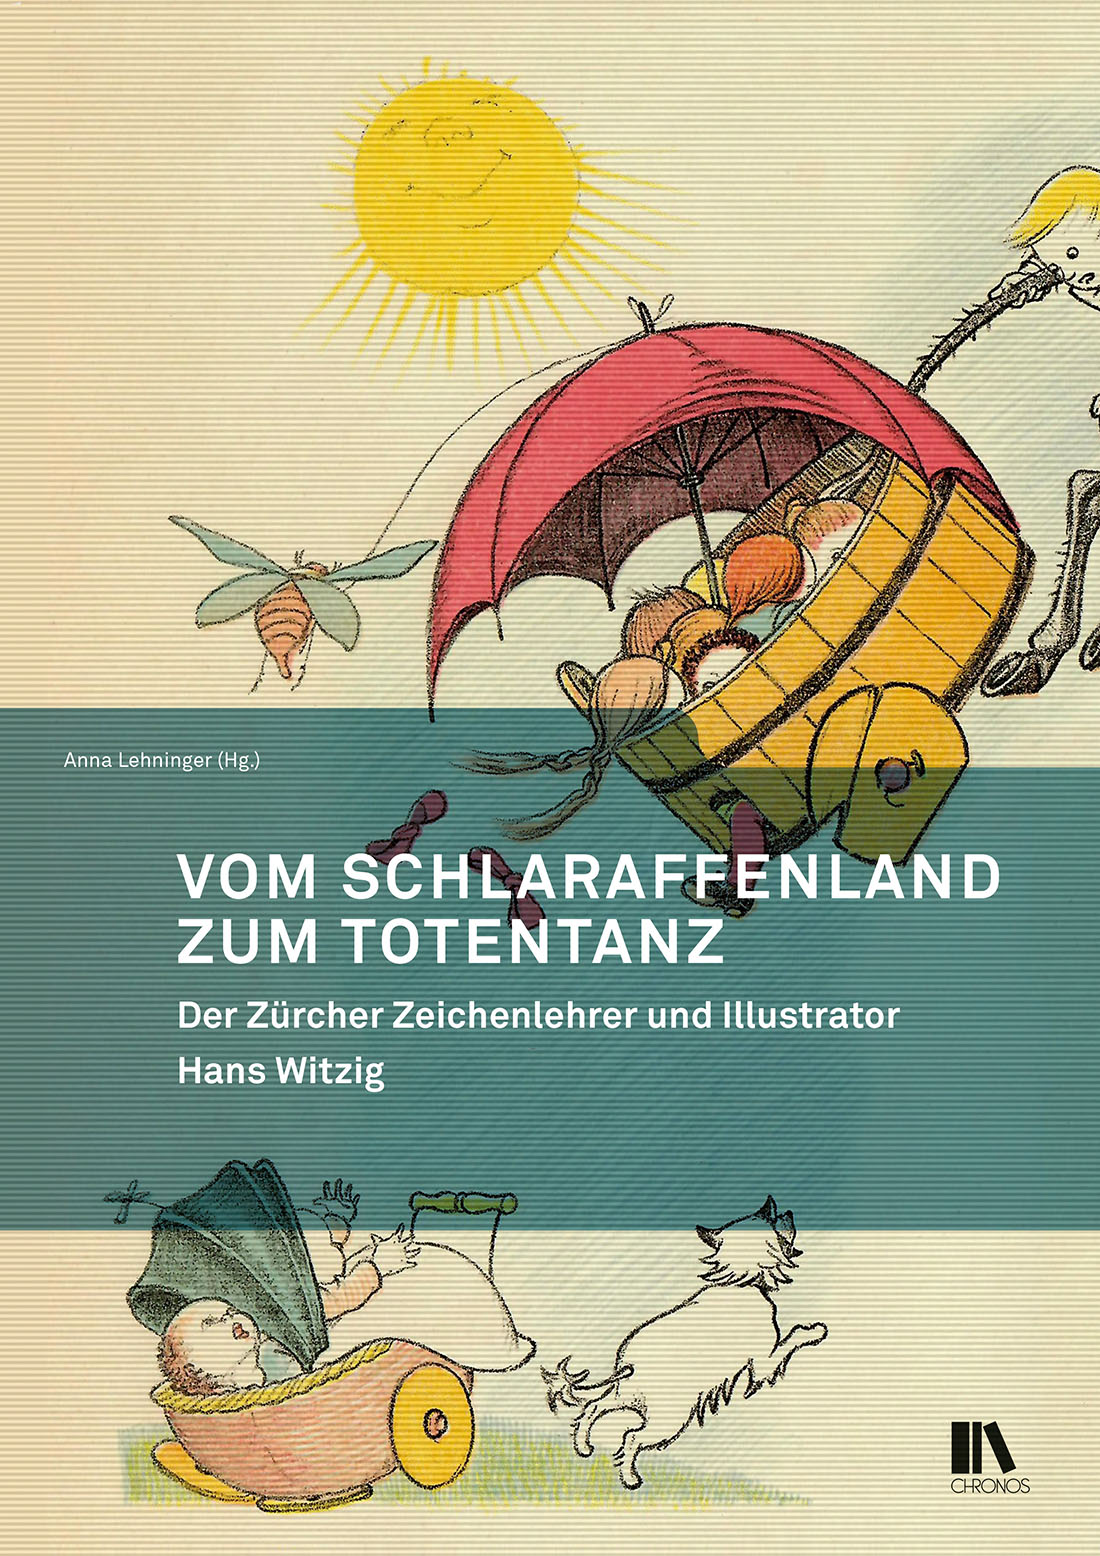 «Vom Schlaraffenland zum Totentanz – der Zürcher Zeichenlehrer und Illustrator Hans Witzig» herausgegeben von Anna Lehninger